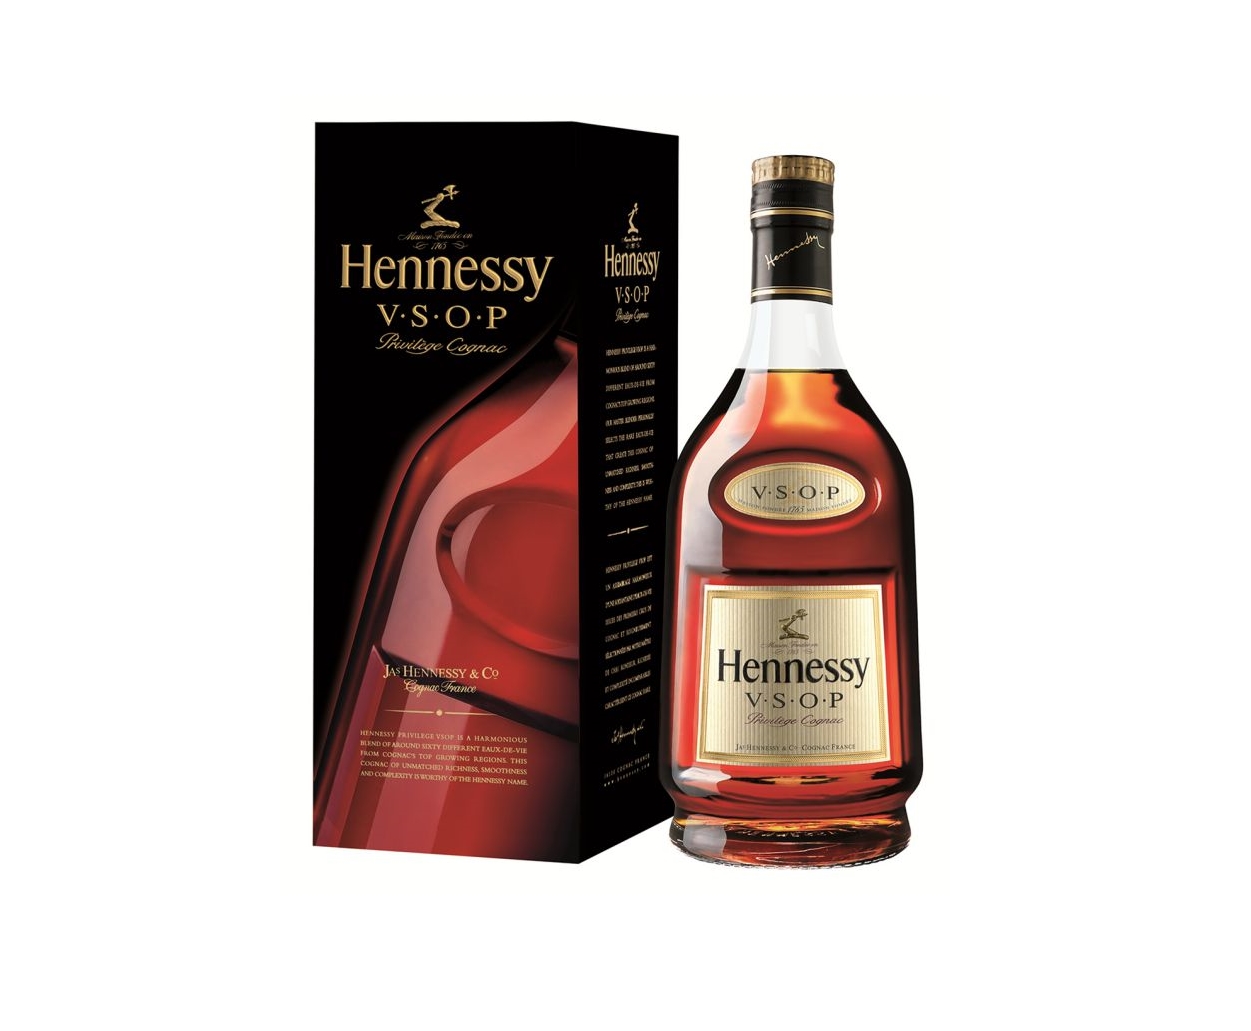 Хеннесси 0.7 оригинал. Hennessy коньяк v.s.o.p. 0,7 л. Хеннесси Привилеж VSOP. Коньяк Hennessy VSOP Privilege. Коньяк Hennessy Privilege VSOP, 0.7Л.